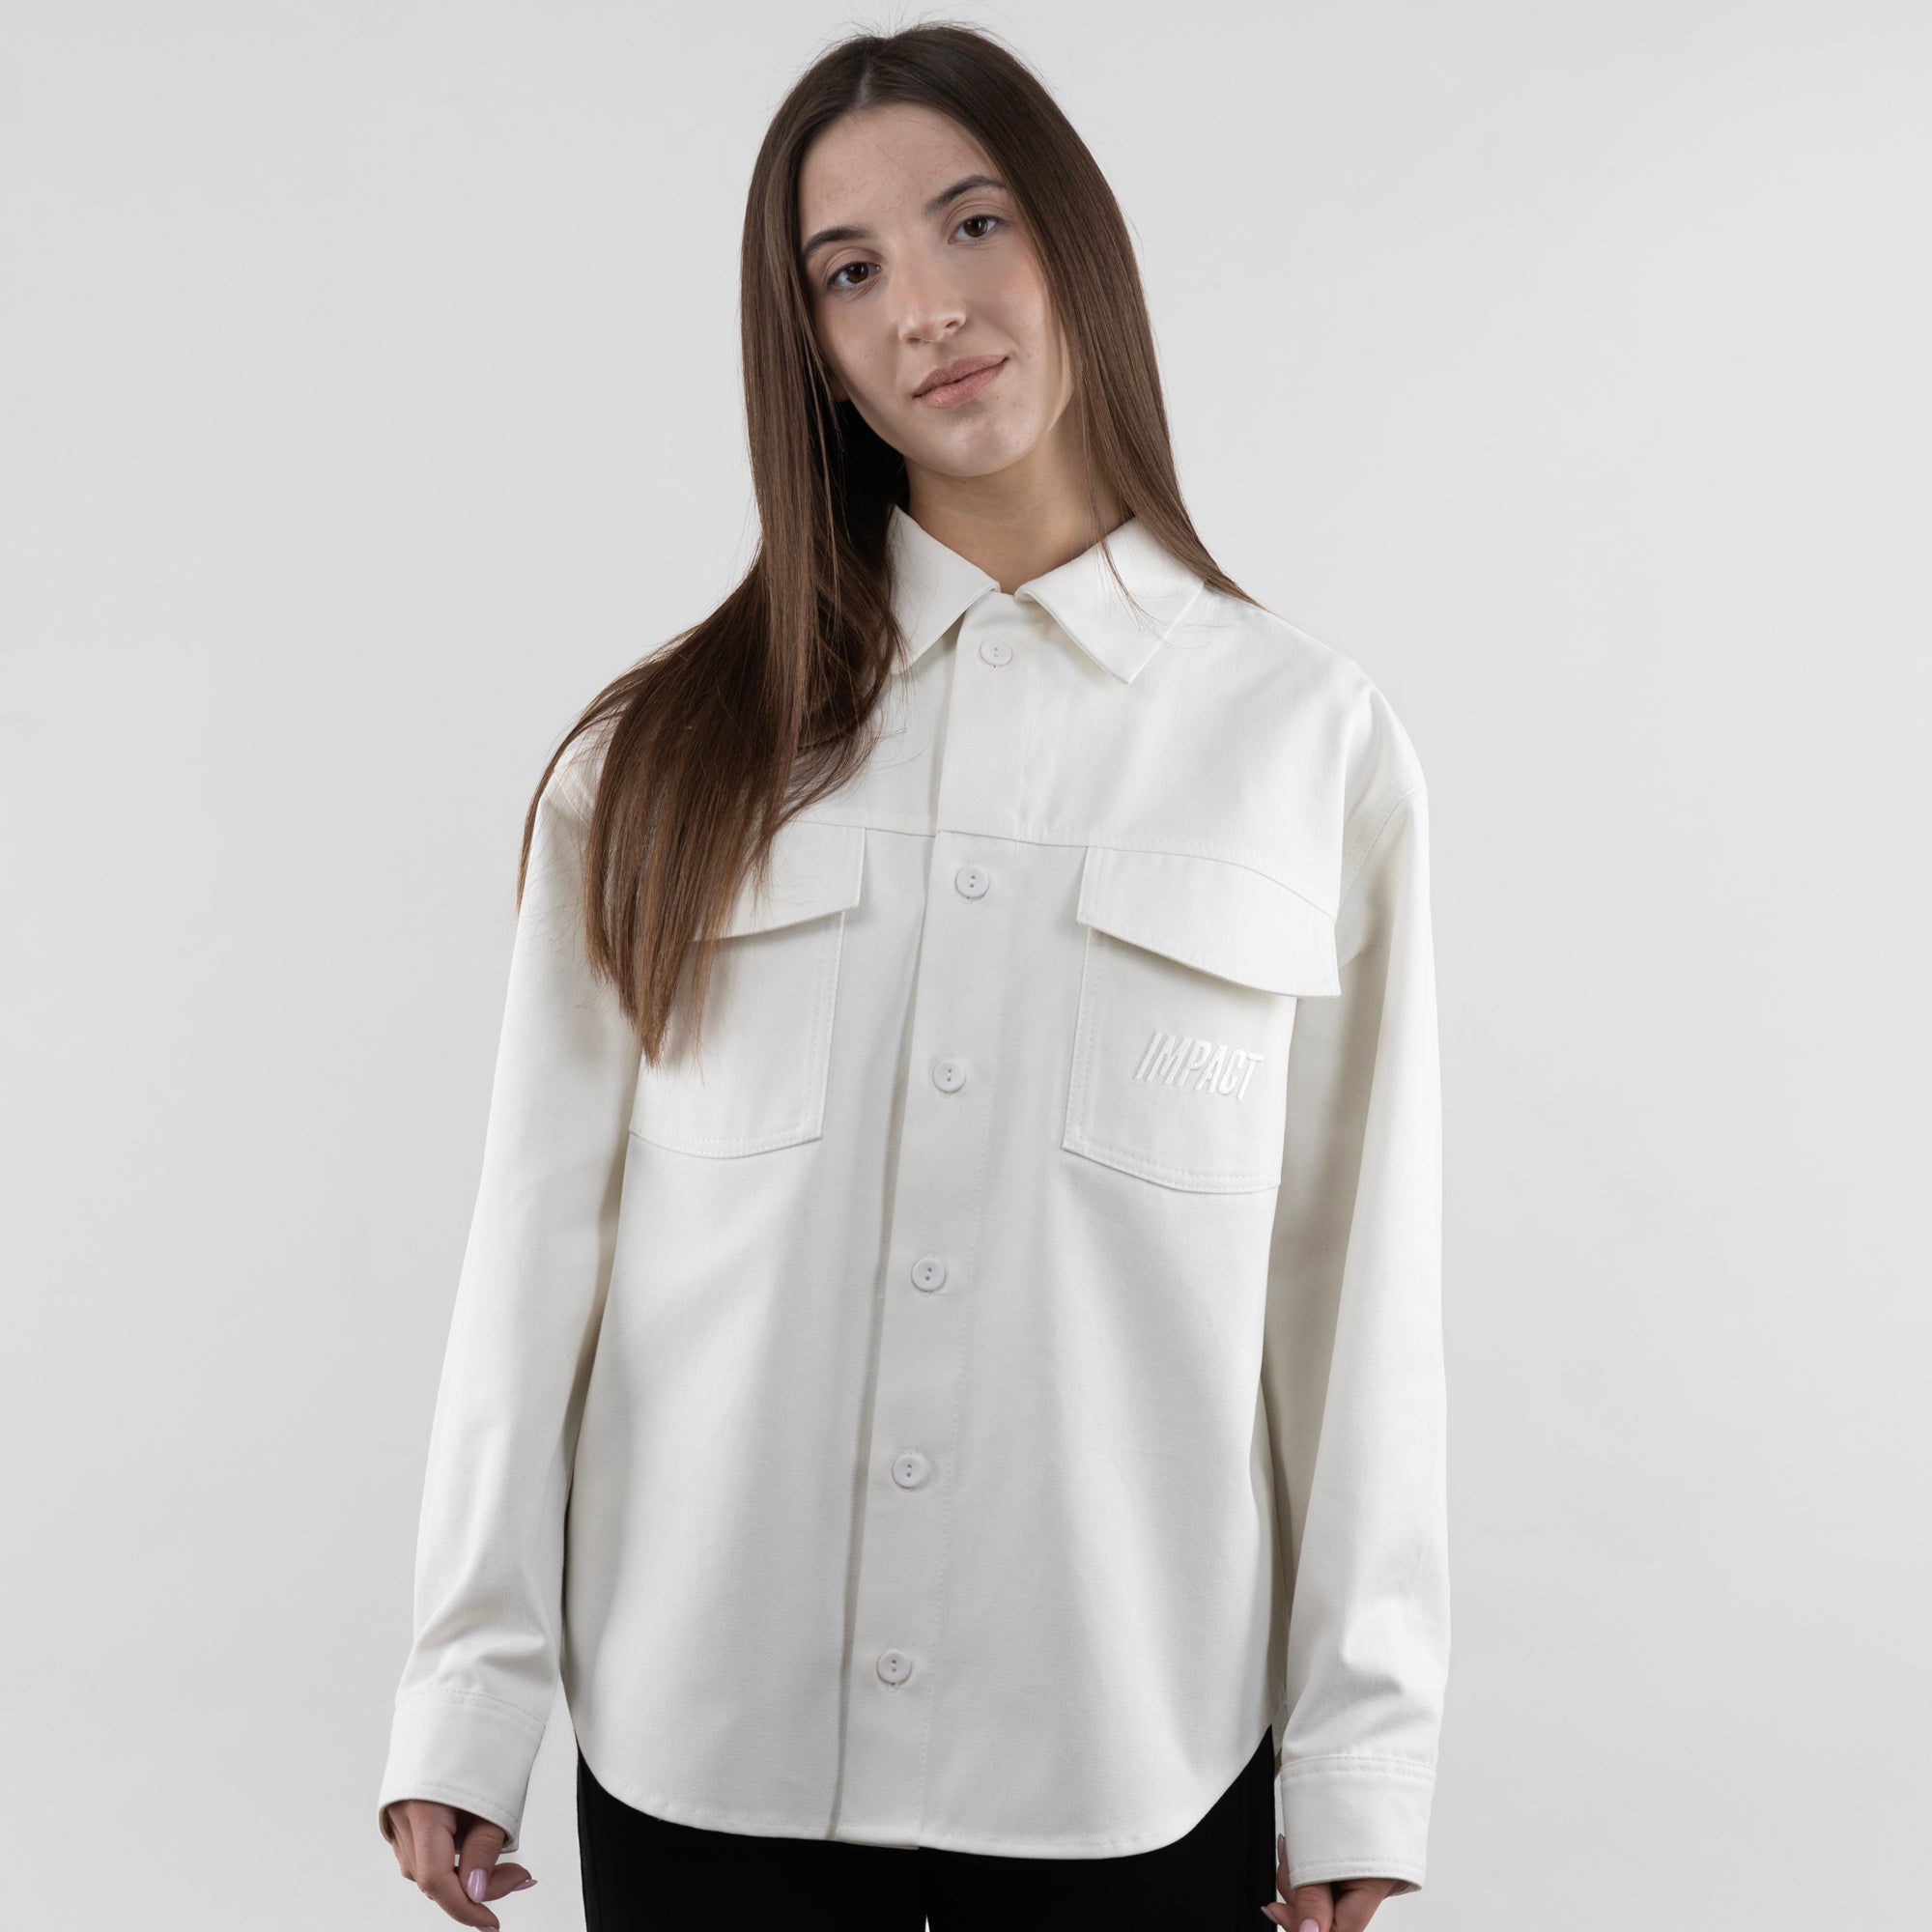 Cotton Shirt For Women, Unisex Casual Shirt